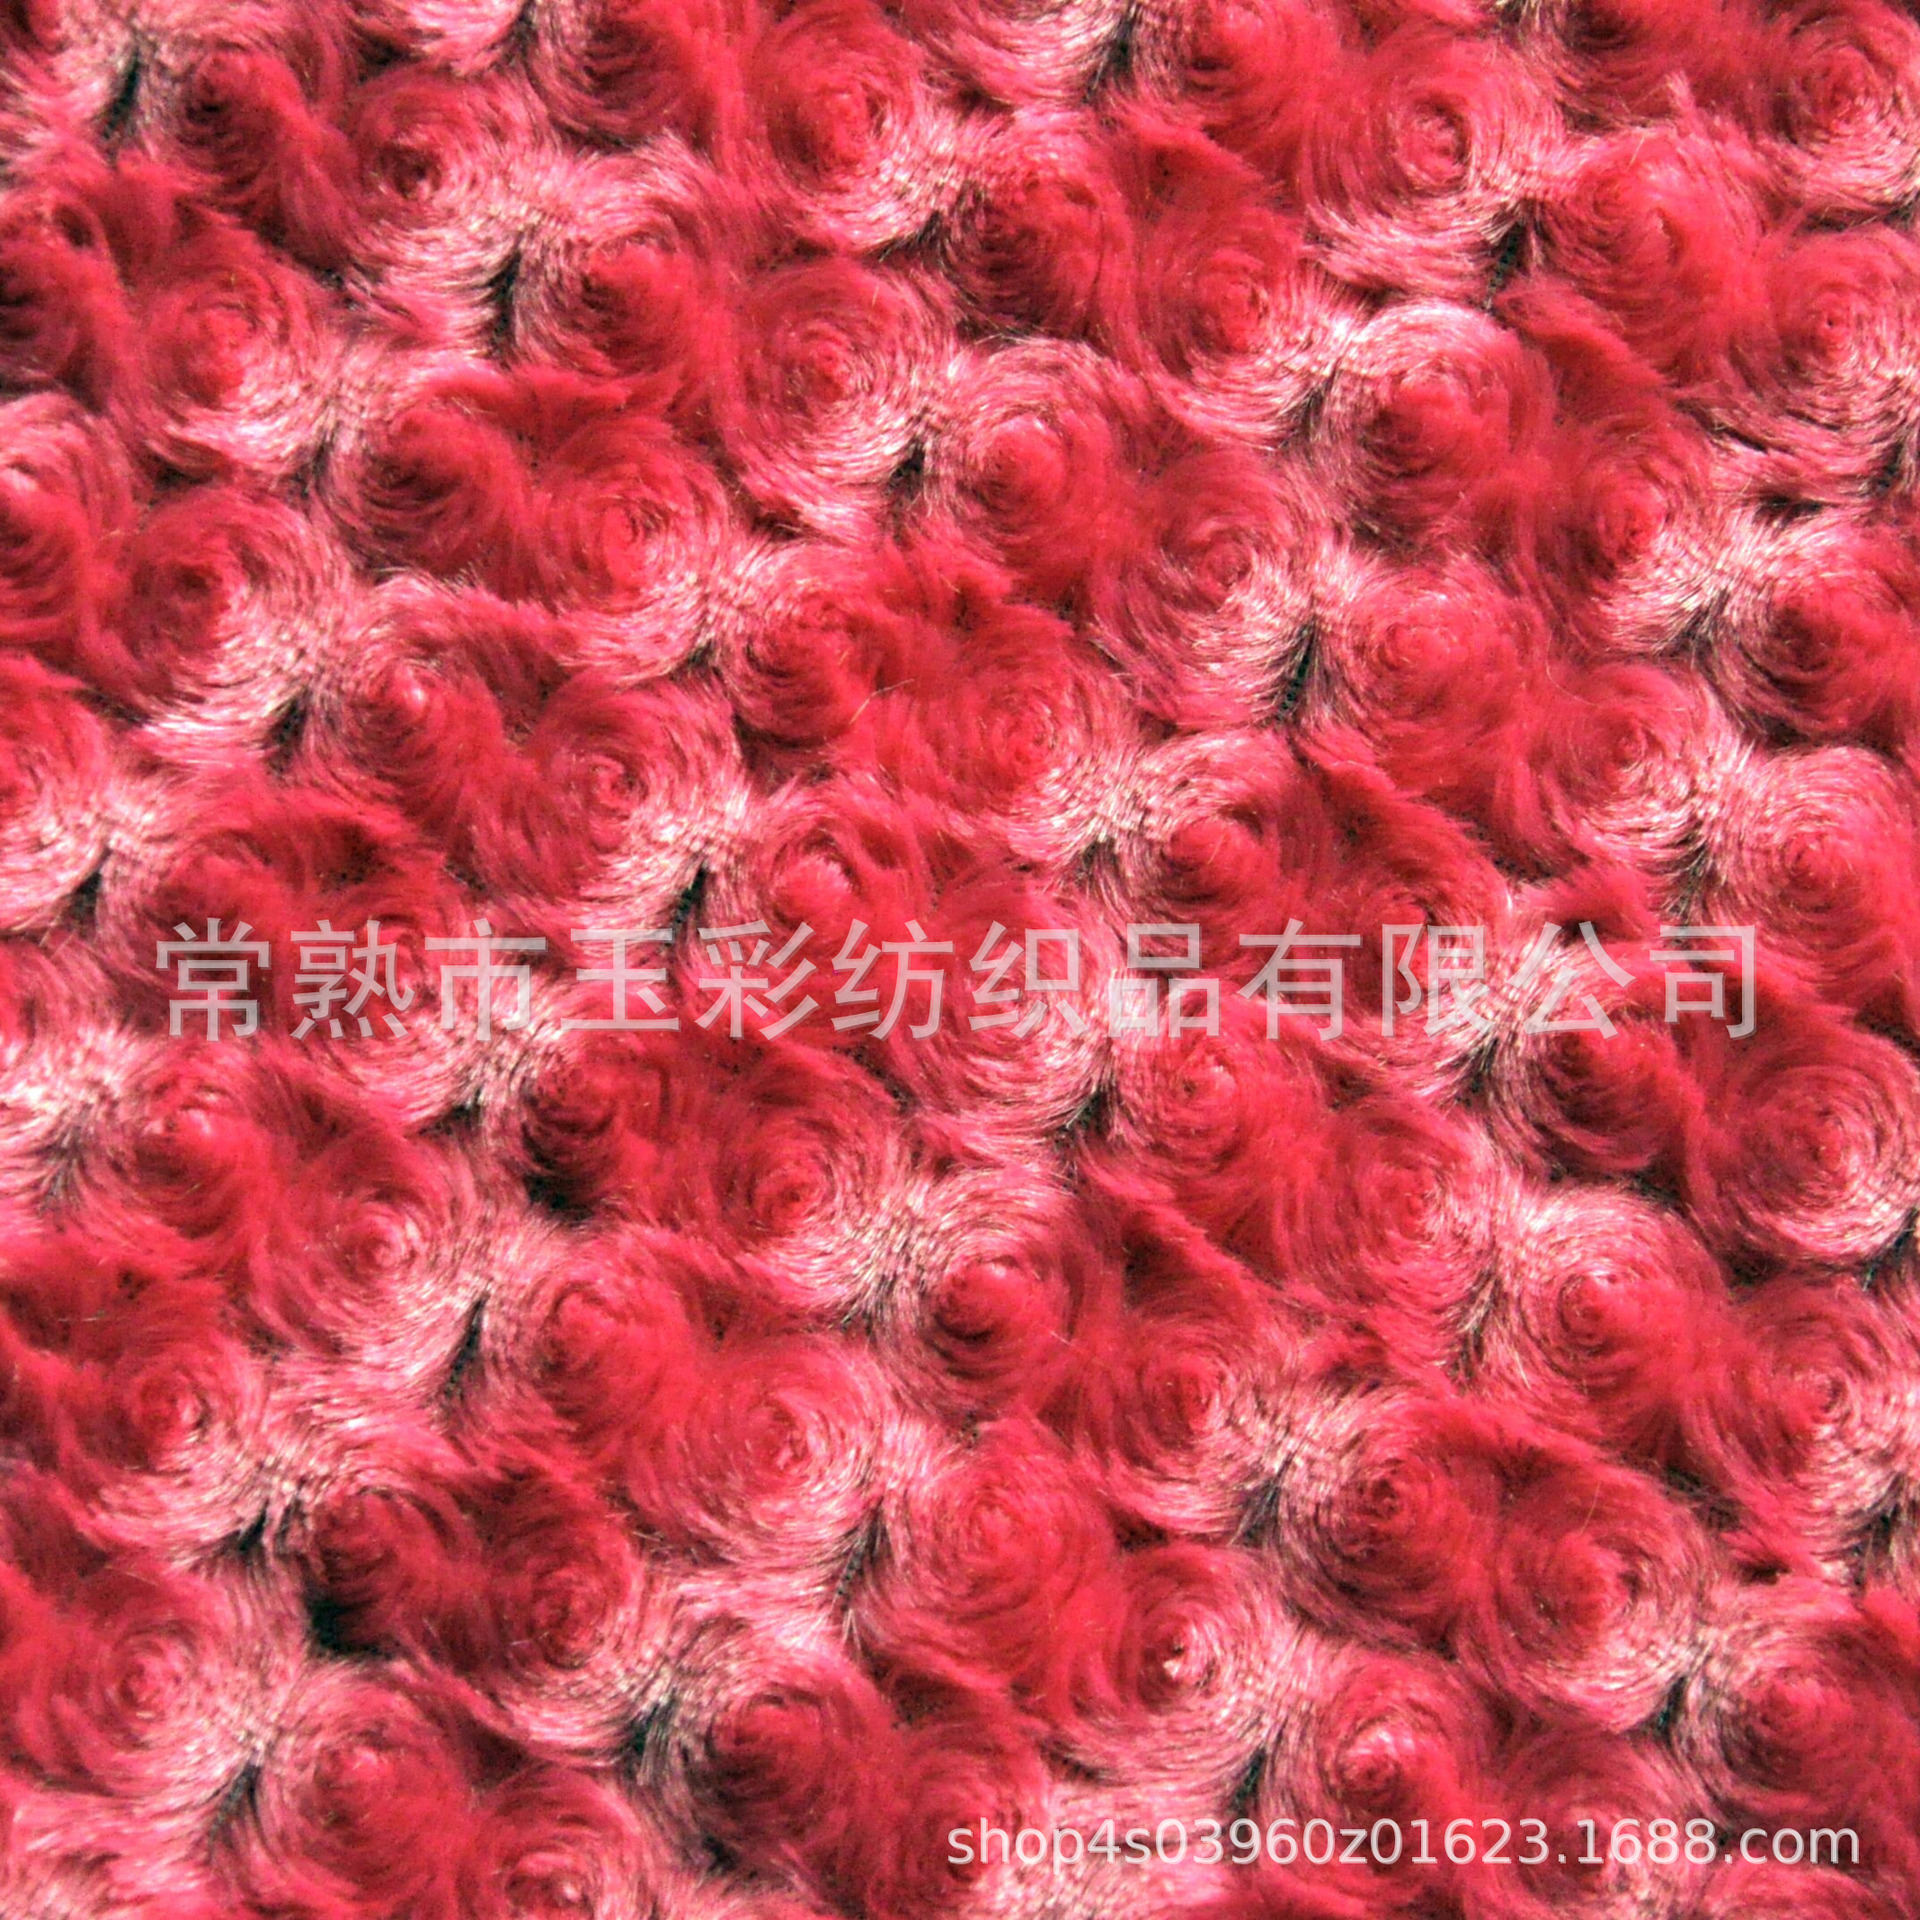 红色玫瑰绒 拧花PV绒 南韩绒刷花 泰迪绒 minky rose fabric